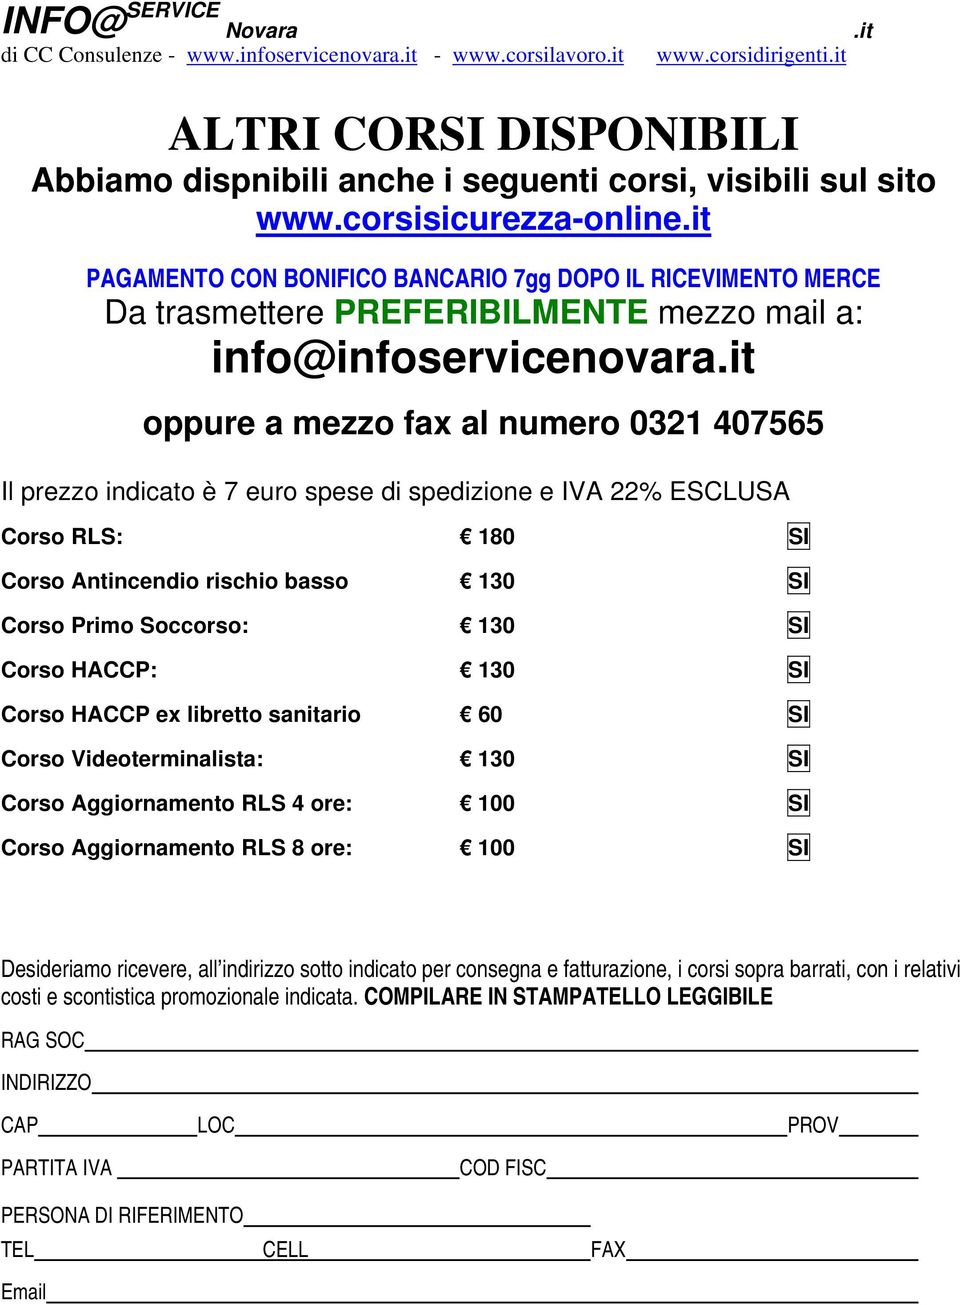 corsisicurezza-online info@infoservicenovara Il prezzo indicato è 7 euro spese di spedizione e IVA 22% ESCLUSA Corso RLS: 180 SI